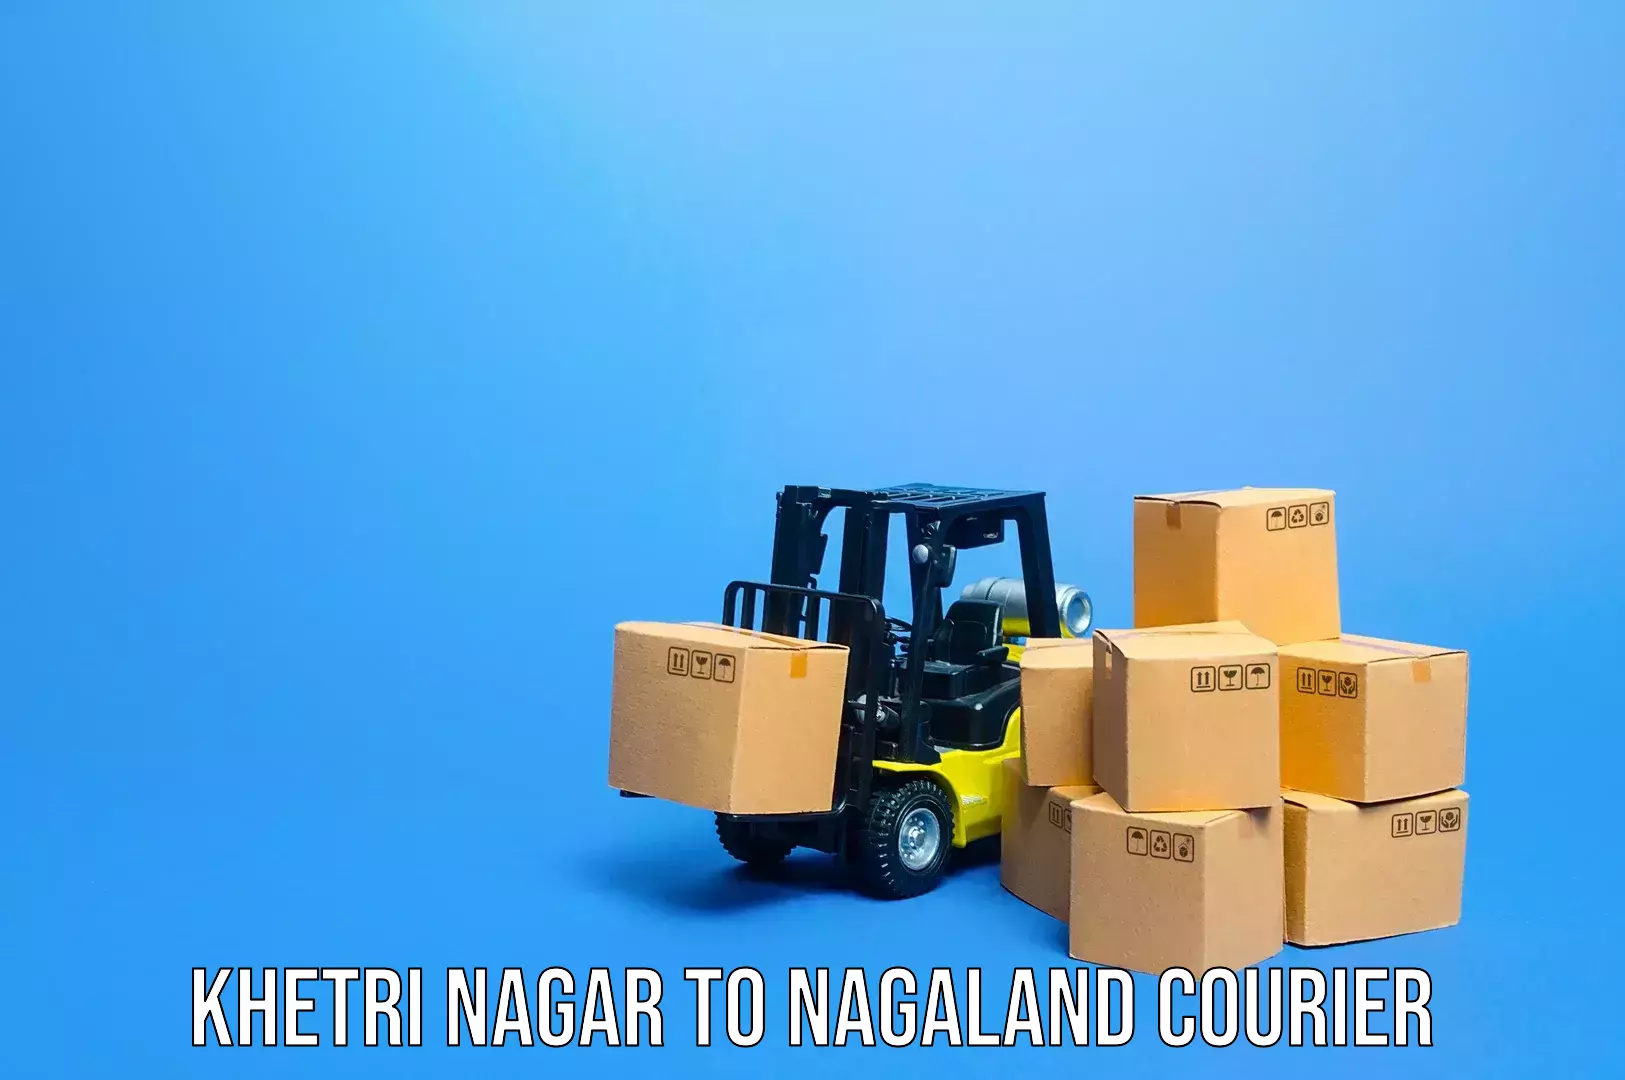 Baggage shipping service Khetri Nagar to Nagaland